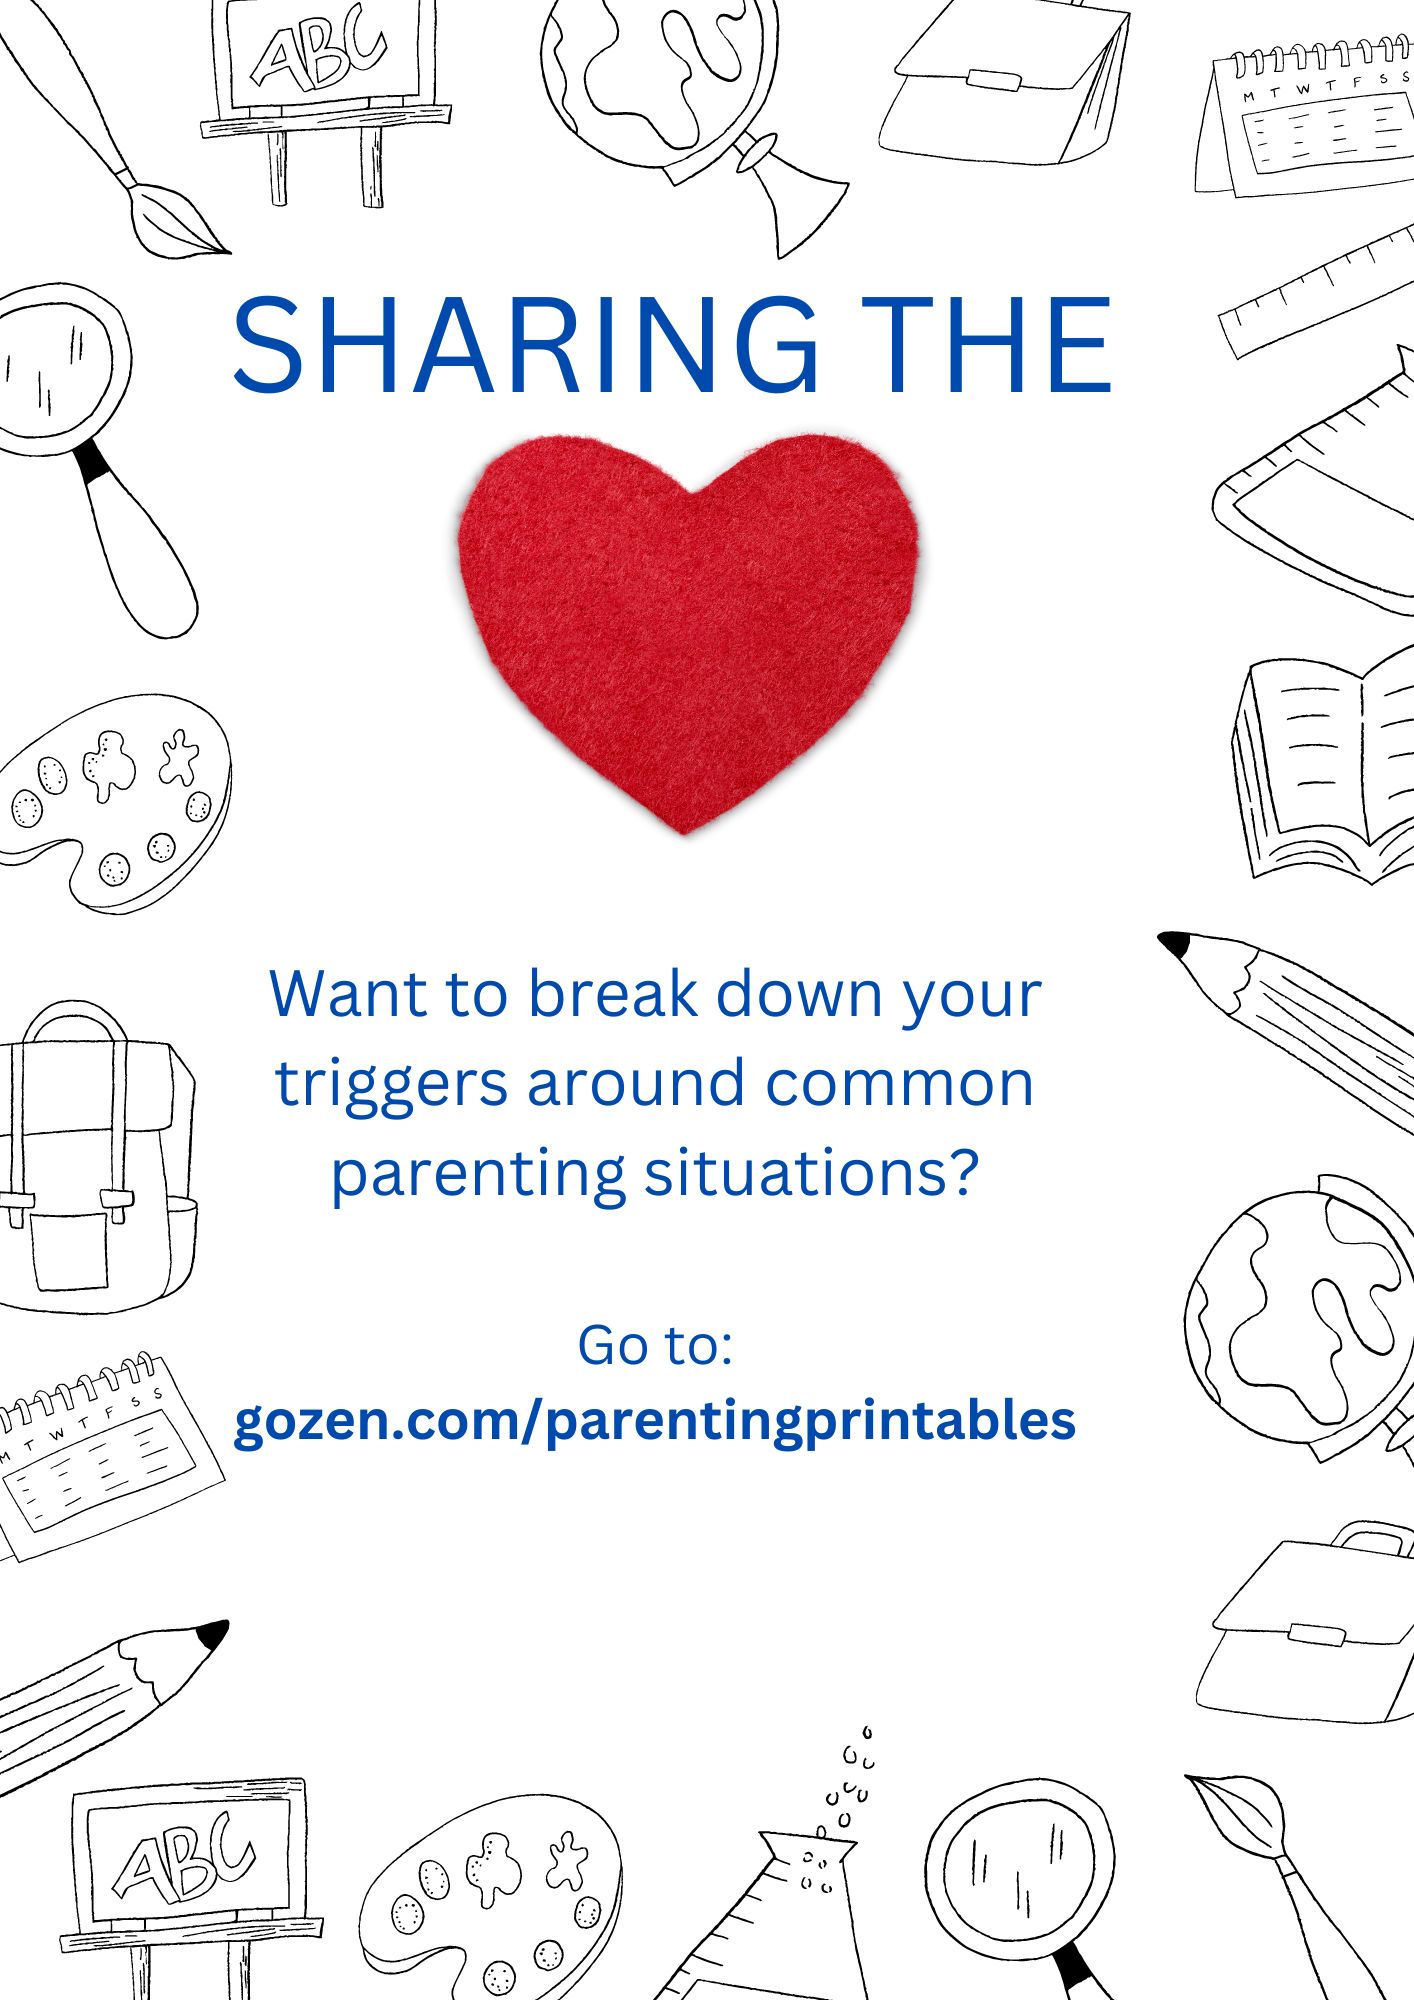 Sharing the heart: gozen.com/parentprintables